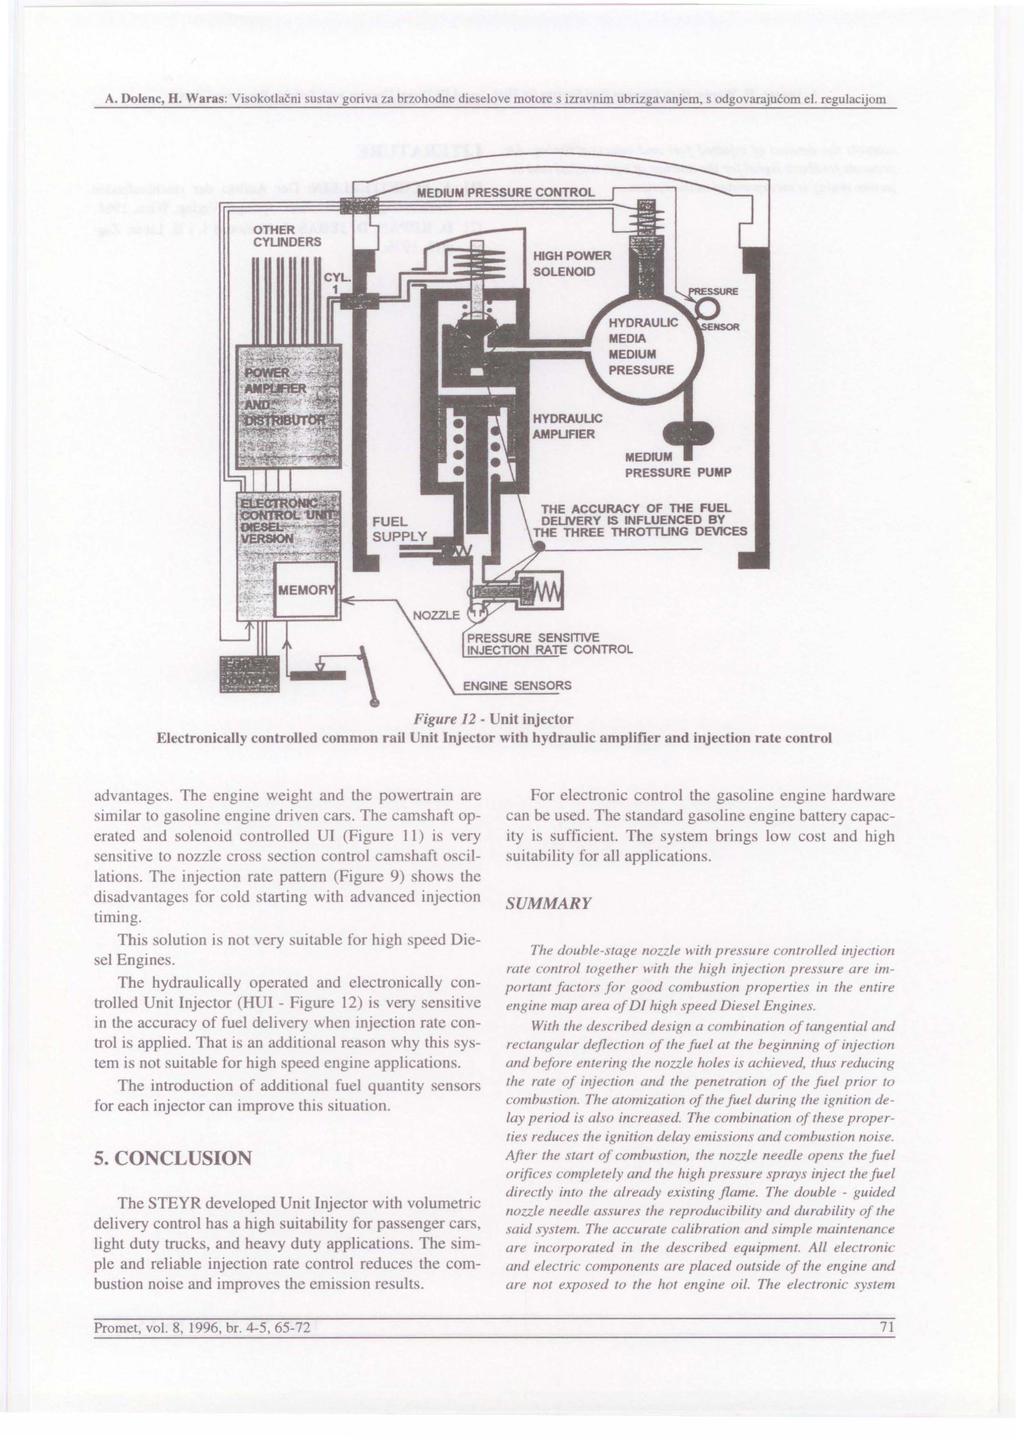 A. Dolenc, H. Waras: Visokotlacni sustav goriva za brzohodne dieselove motore s izravnirn ubrizgavanjem, s odgovarajucom el.